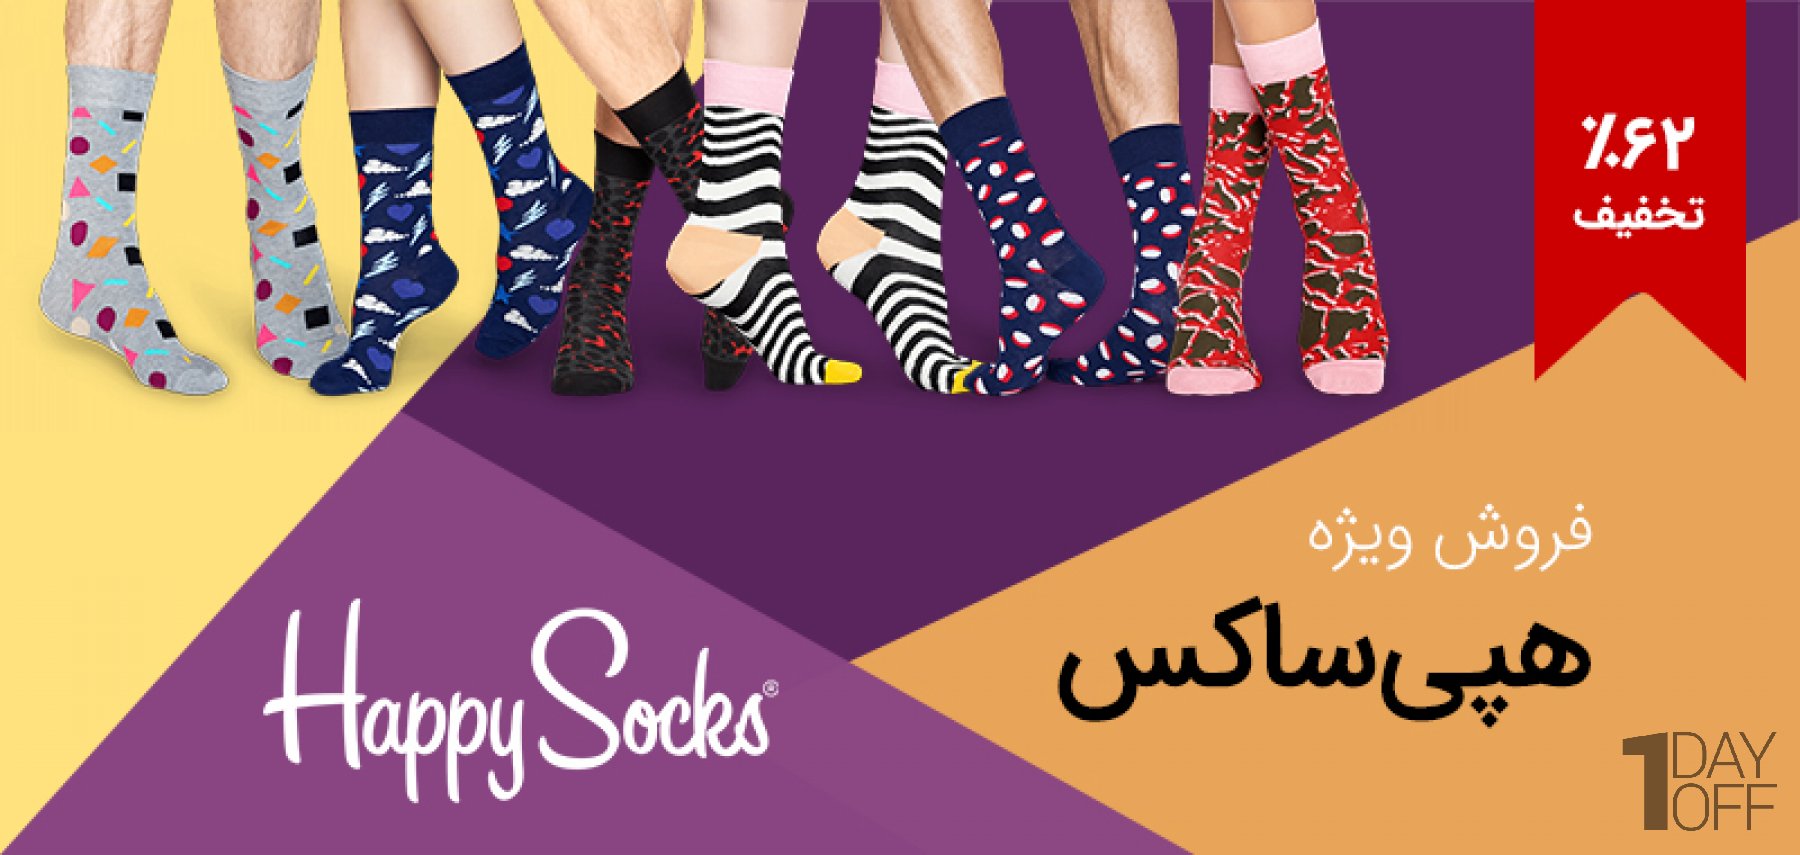 فروش ویژه جوراب‌های برند هپی ساکس Happy Socks در انواع طرح و رنگ، در پروموشن نوروزی وان دی آف